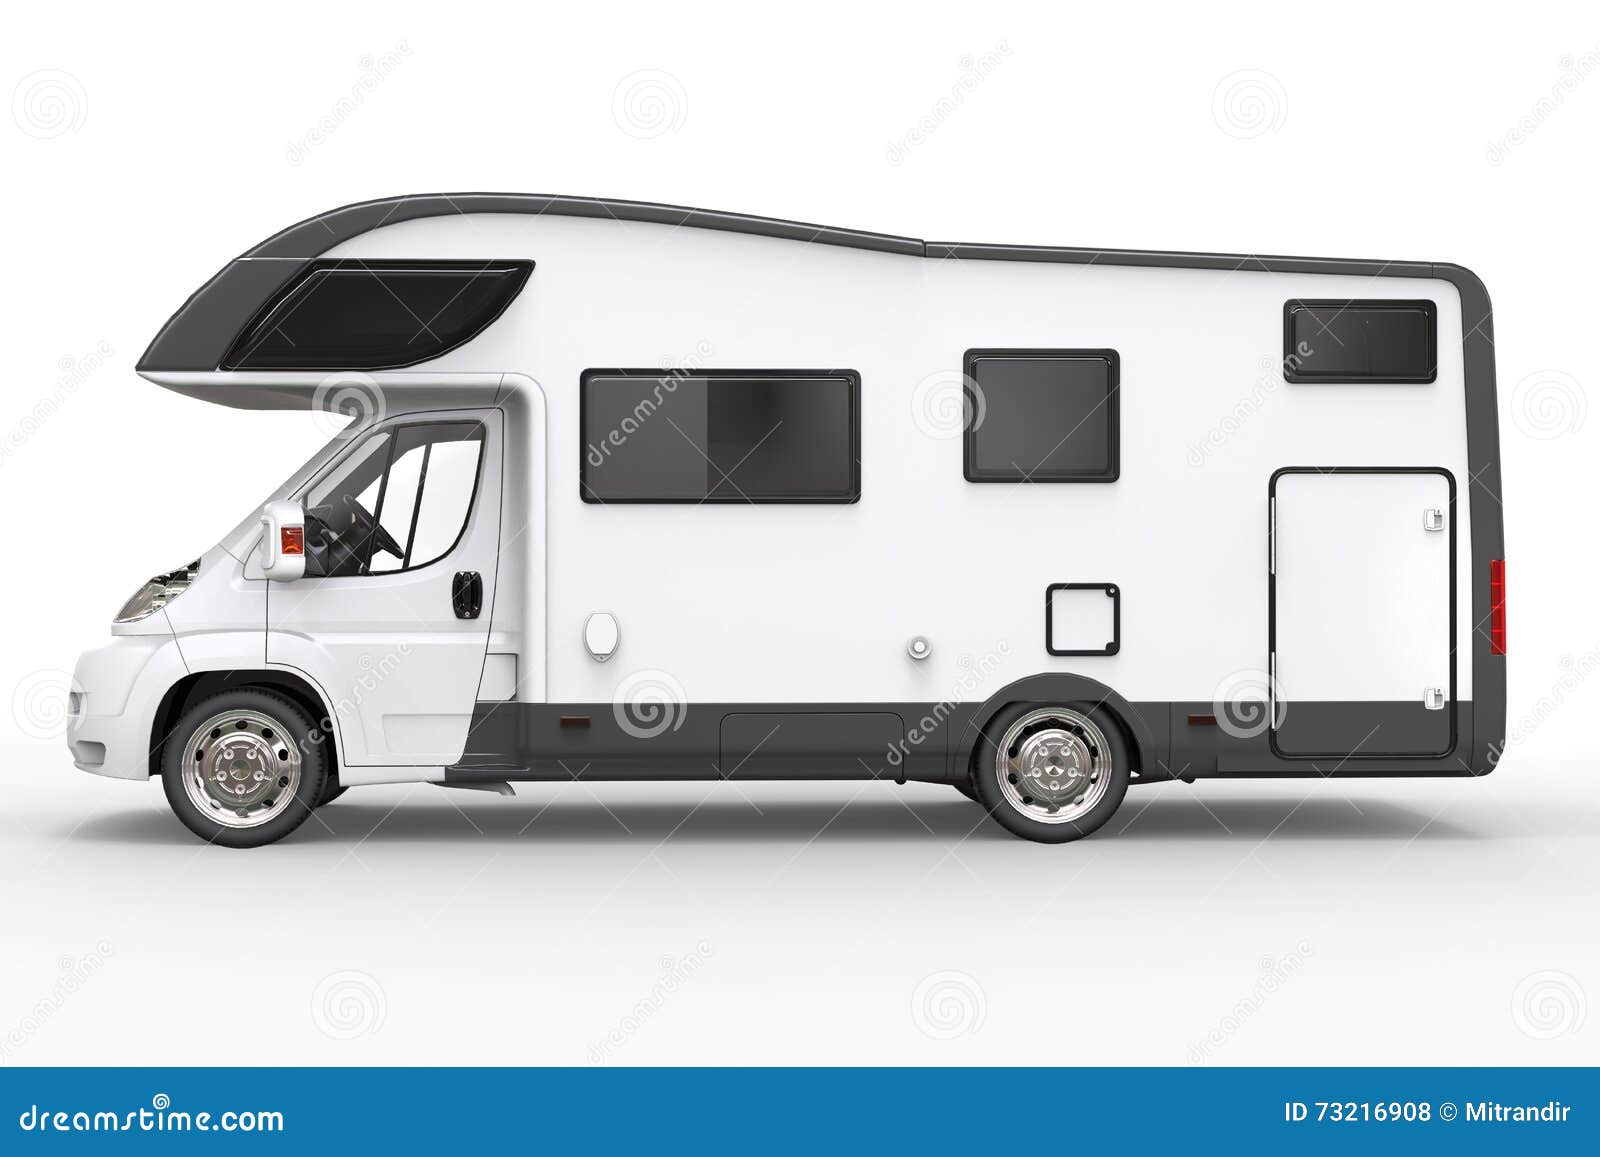 Big White Camper Vehicle - Side View Stock Illustration - Illustration ...